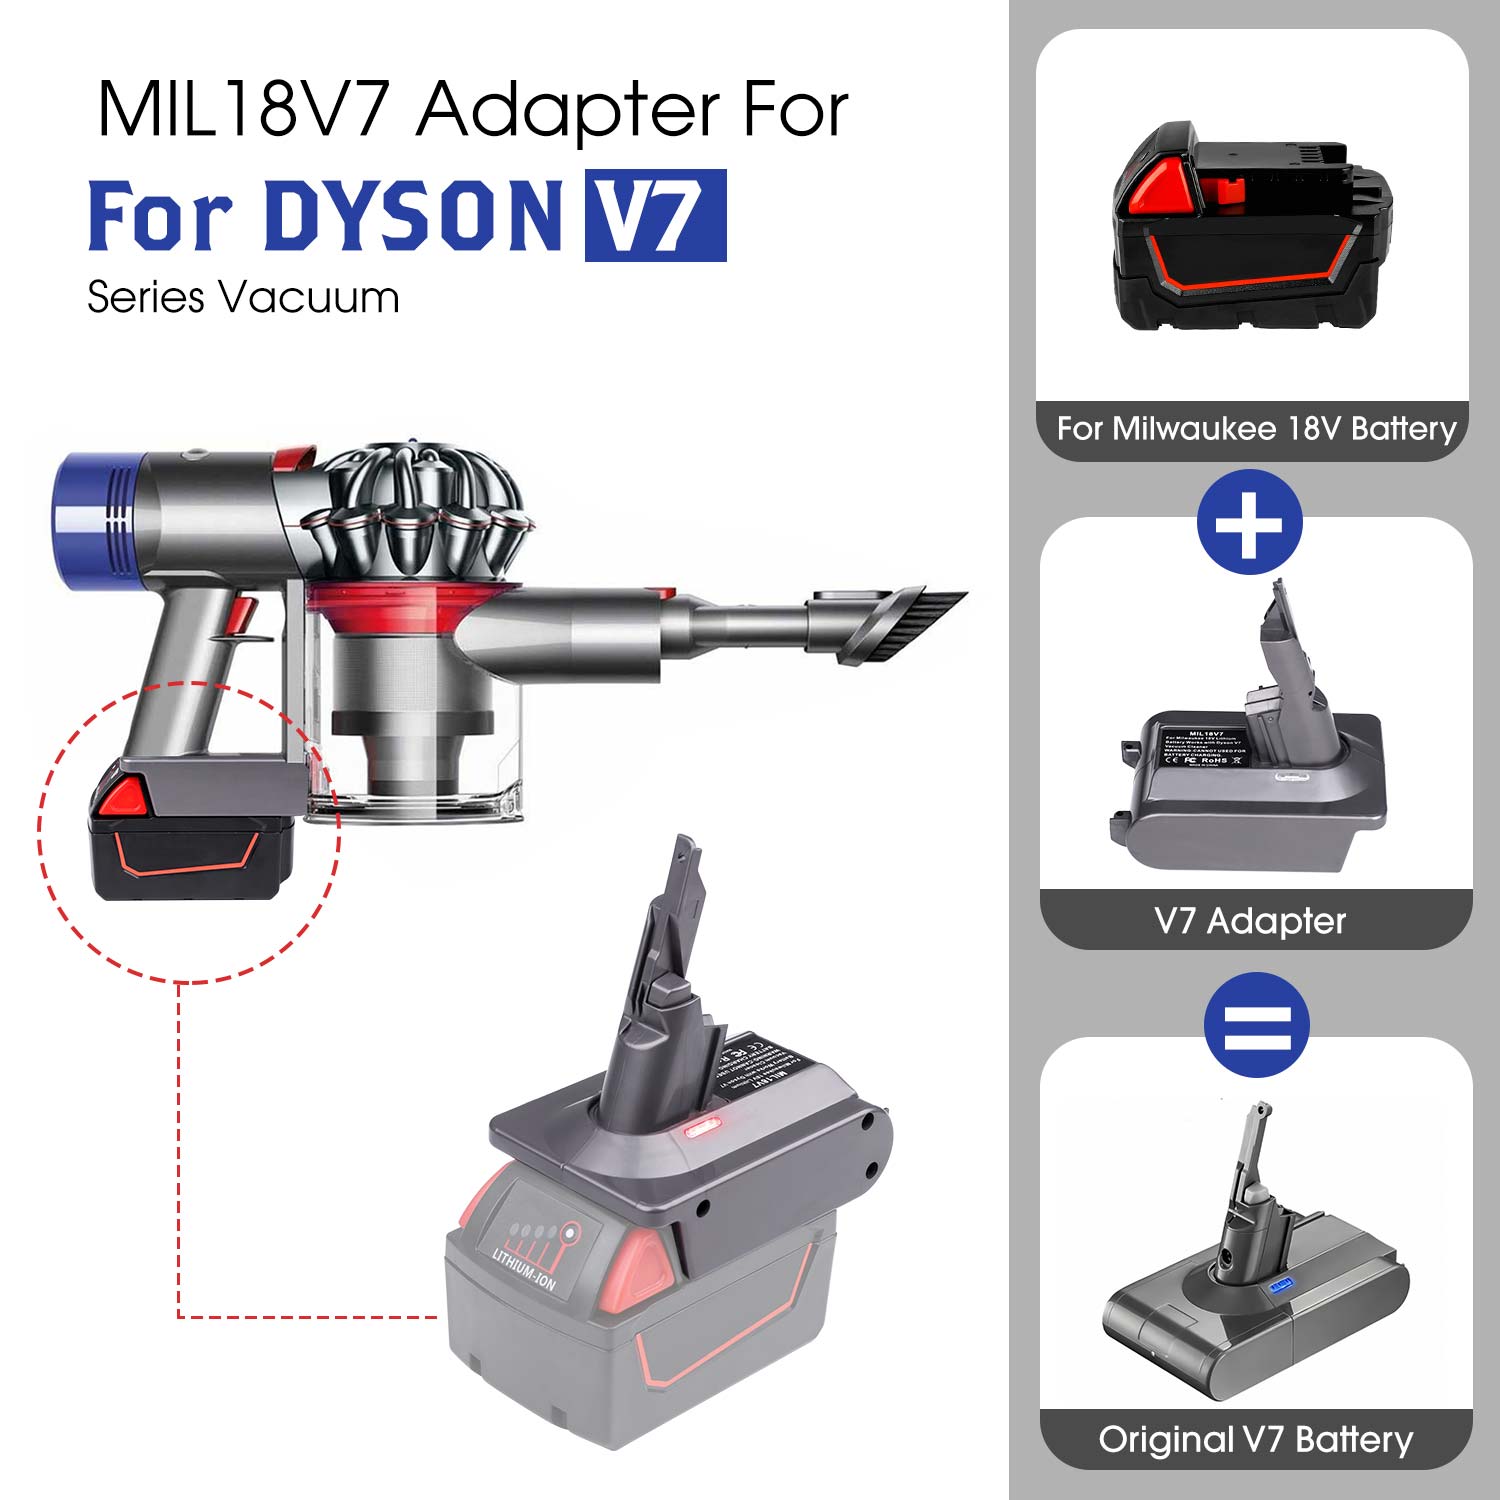 För Dyson V7 Adapter för Milwaukee M18 18V Lithium Battery Converter till Dyson V7,Använd för Dyson V7 Dammsugare